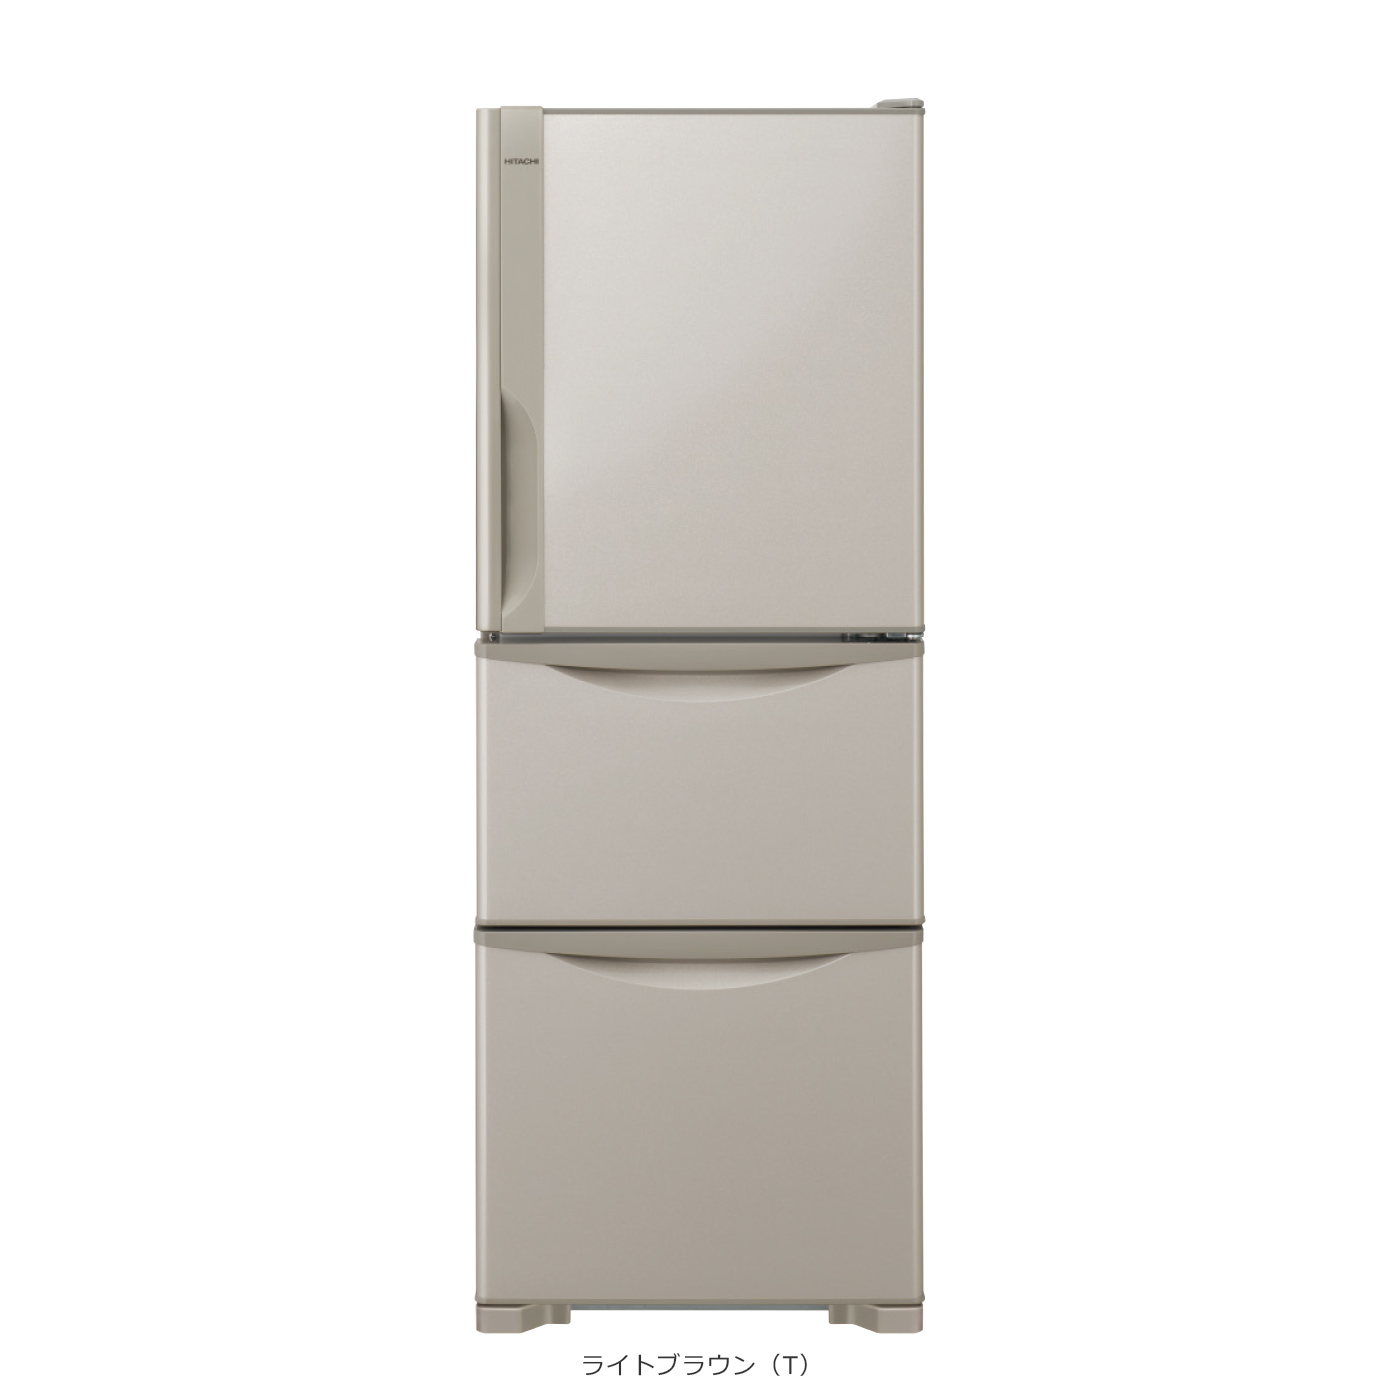 仕様：冷凍冷蔵庫 R-27JV ： 冷蔵庫 ： 日立の家電品